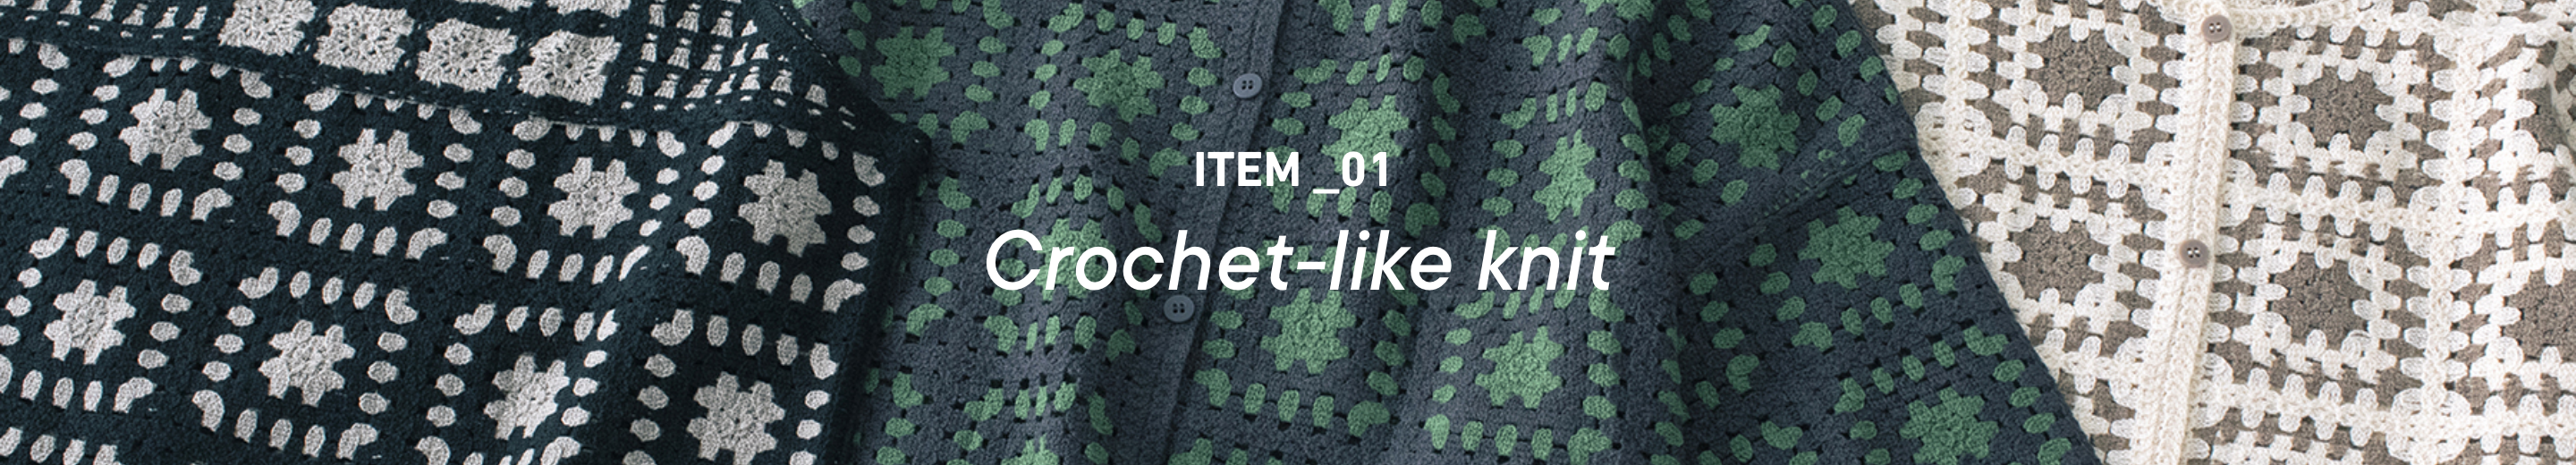 Crochet-like knit